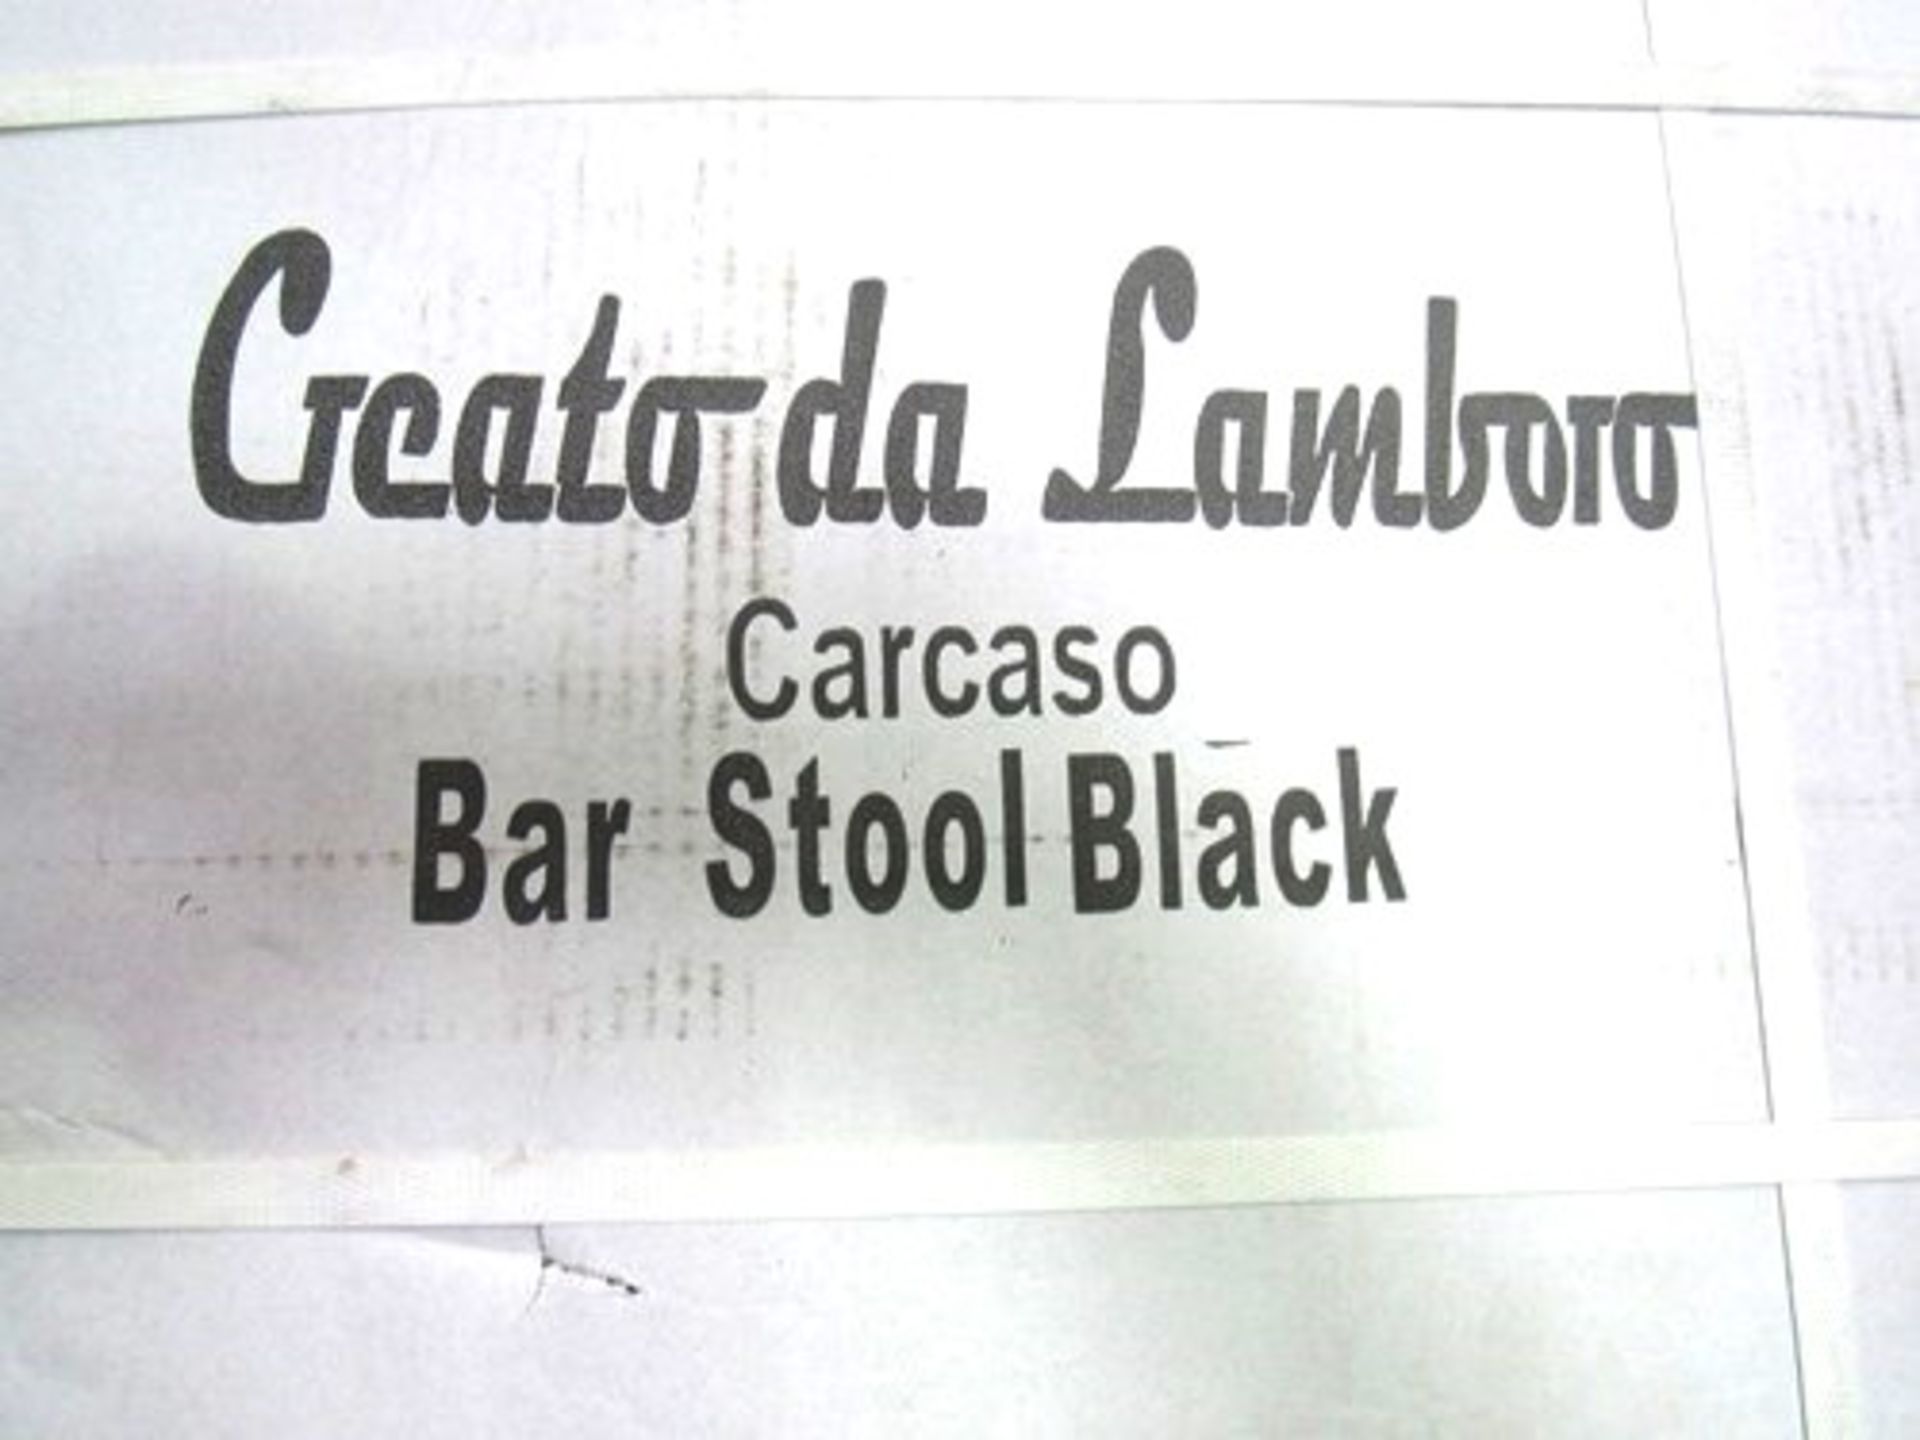 2 x Creato da Lamboro Carcaso black bar stools together with 1 x Creato da Lamboro clear glass table - Image 2 of 3